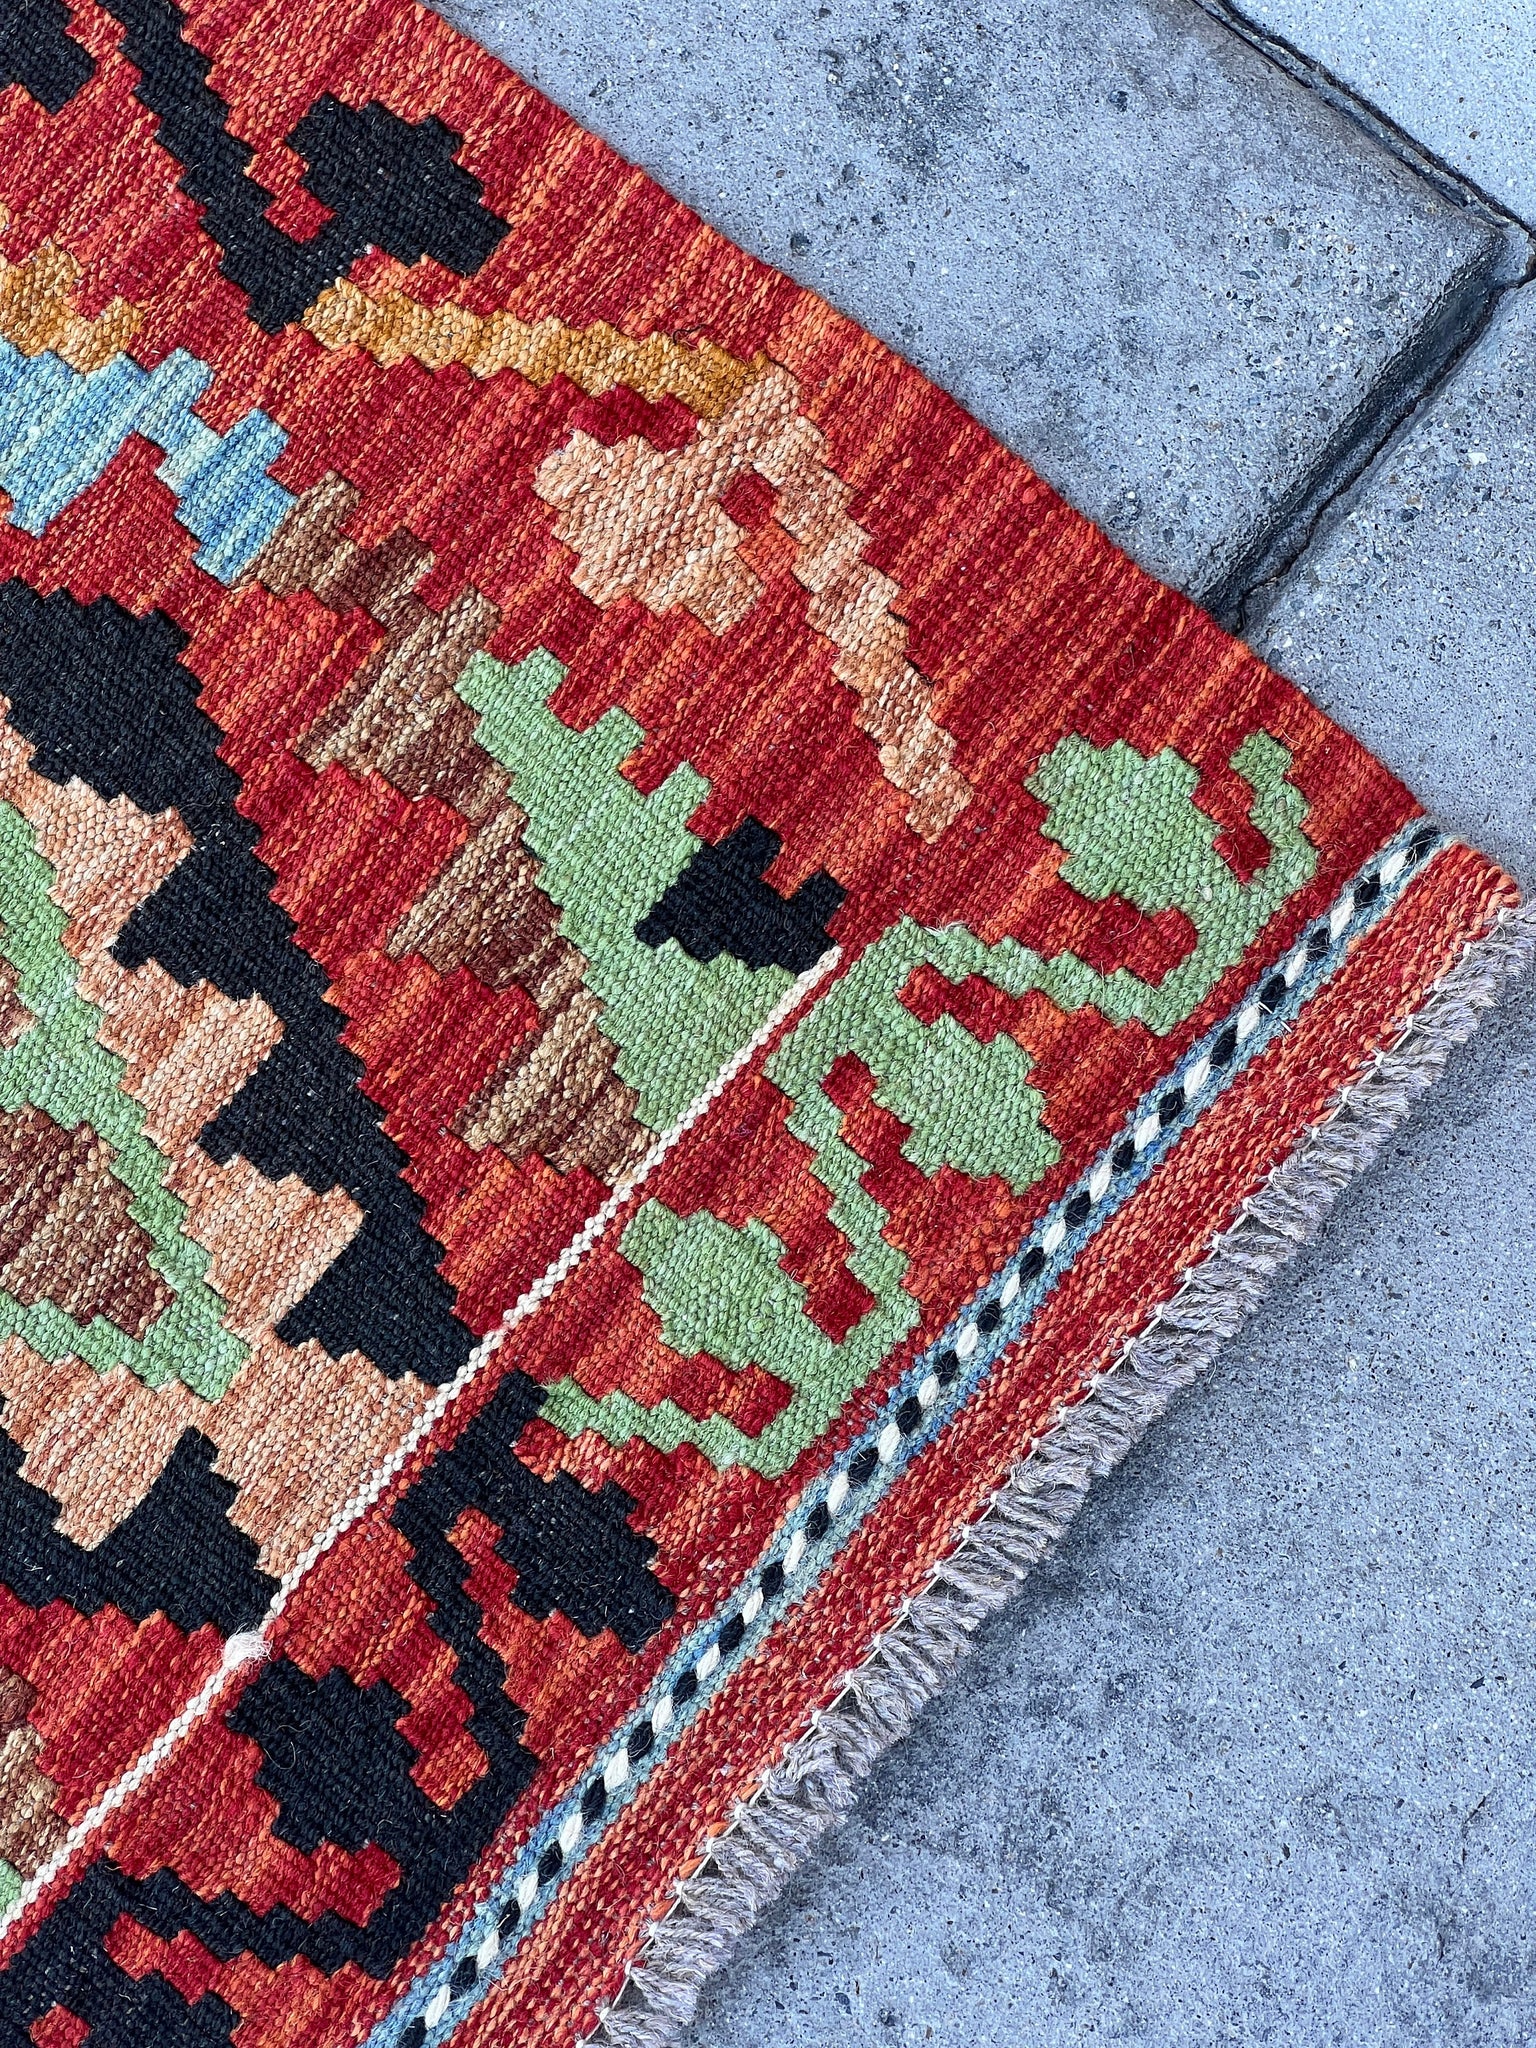 3x10 (90x305) Handmade Afghan Kilim Runner Rug | Red Sky Blue Chocolate Brown Olive Green Orange | Flat Weave Turkish Moroccan Oriental Wool